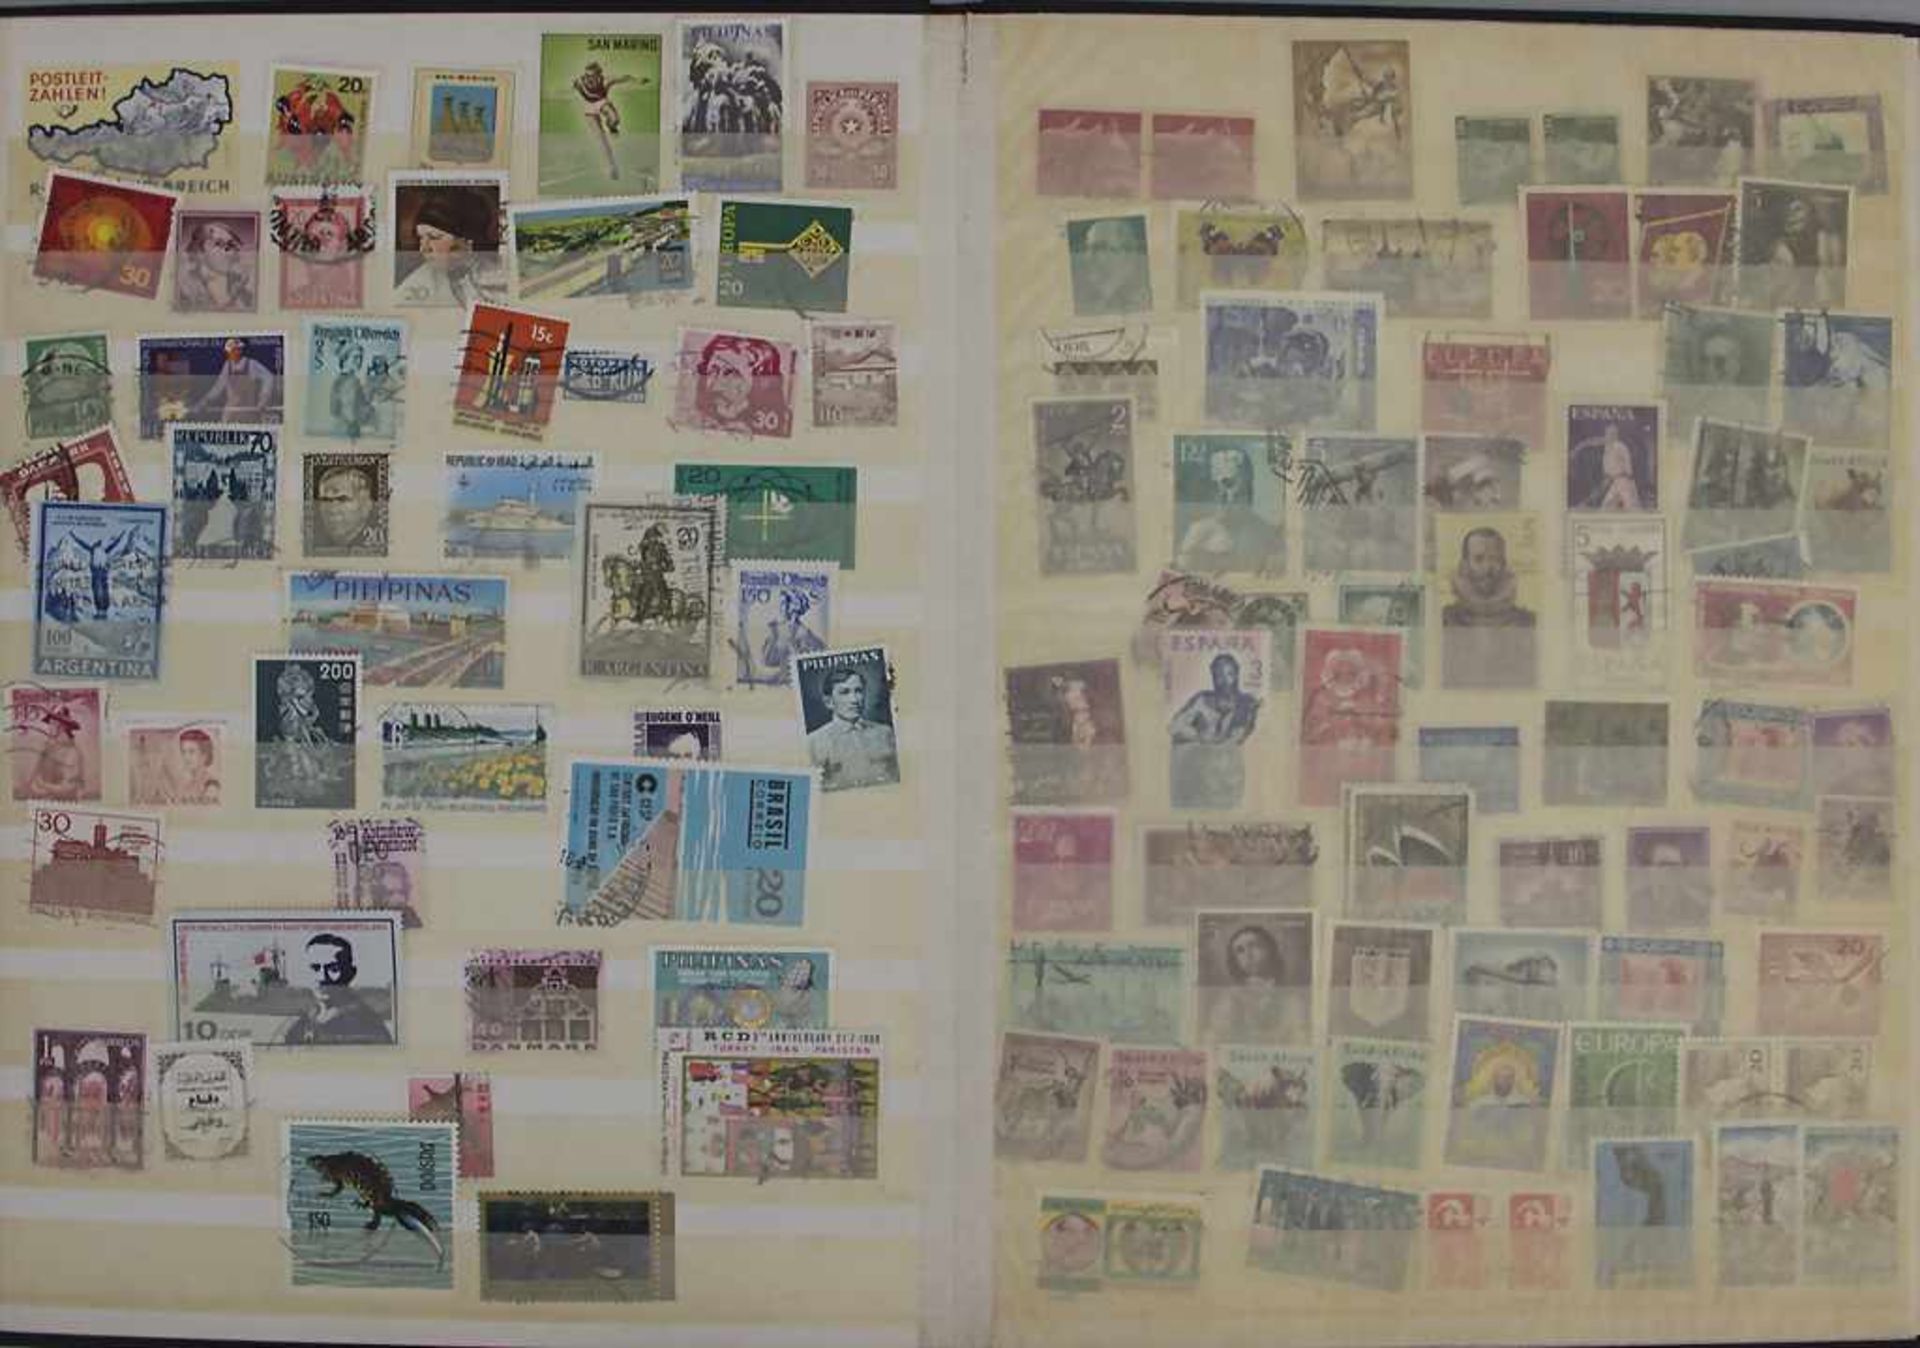 2 Briefmarkenalben / 2 stamp albums2 Alben Briefmarken mit Marken aus aller Welt, Albe - Image 2 of 3